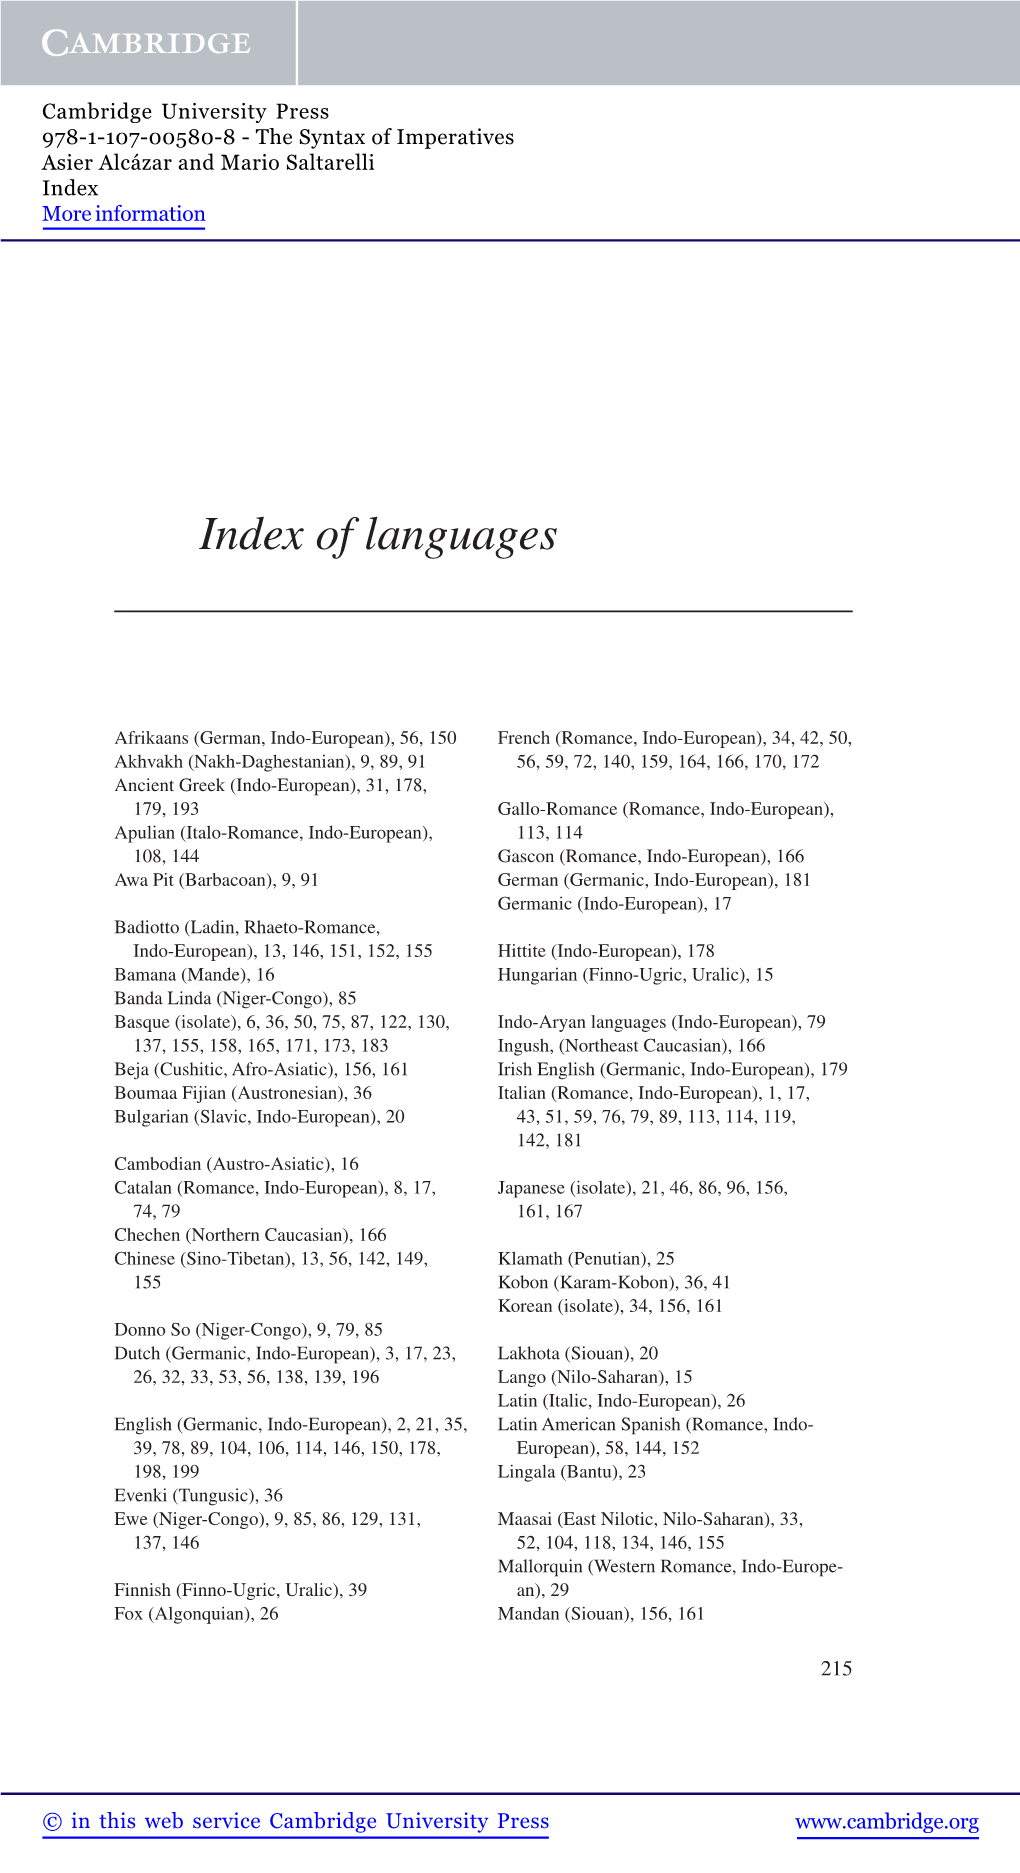 Index of Languages